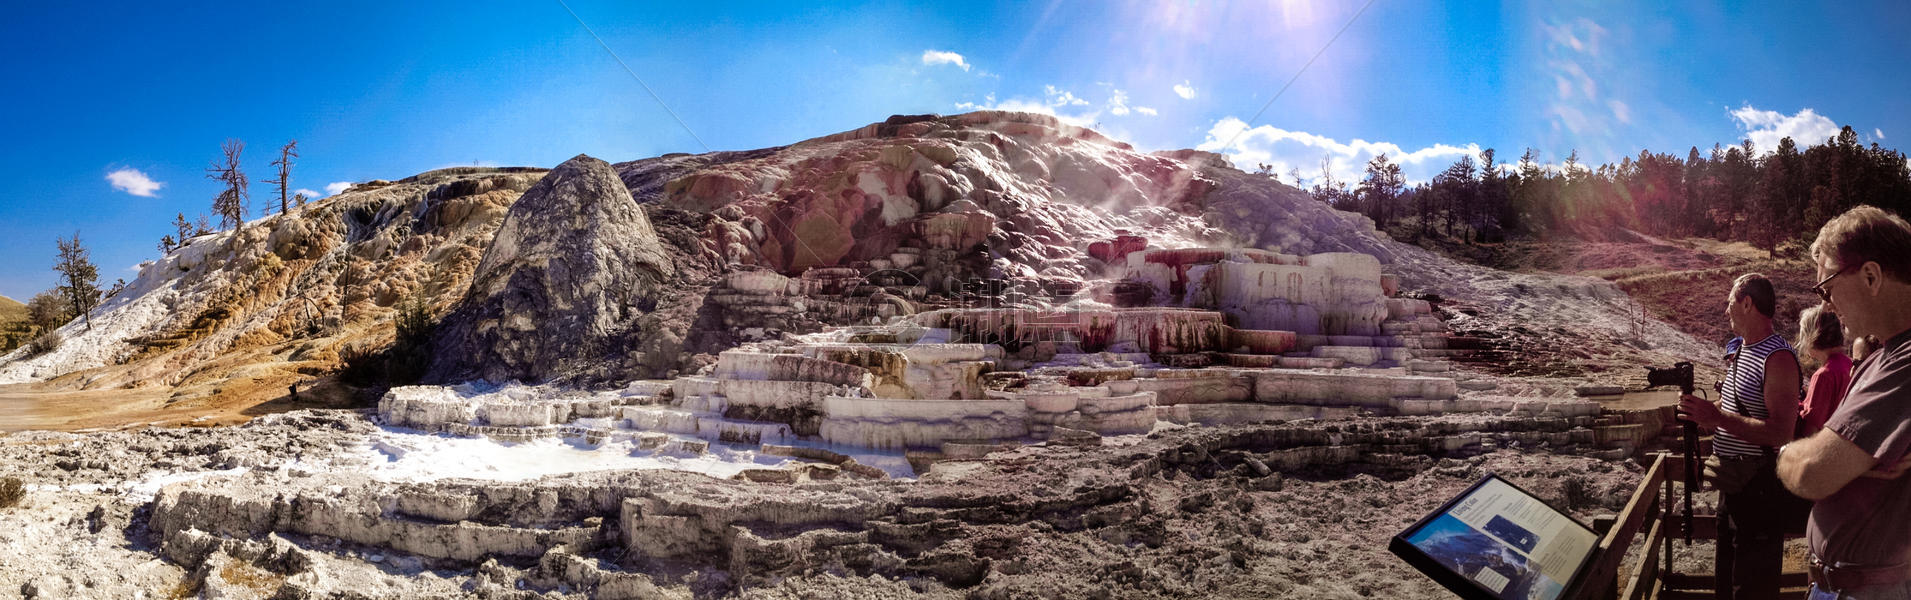 美国黄石公园的猛犸热泉图片素材免费下载